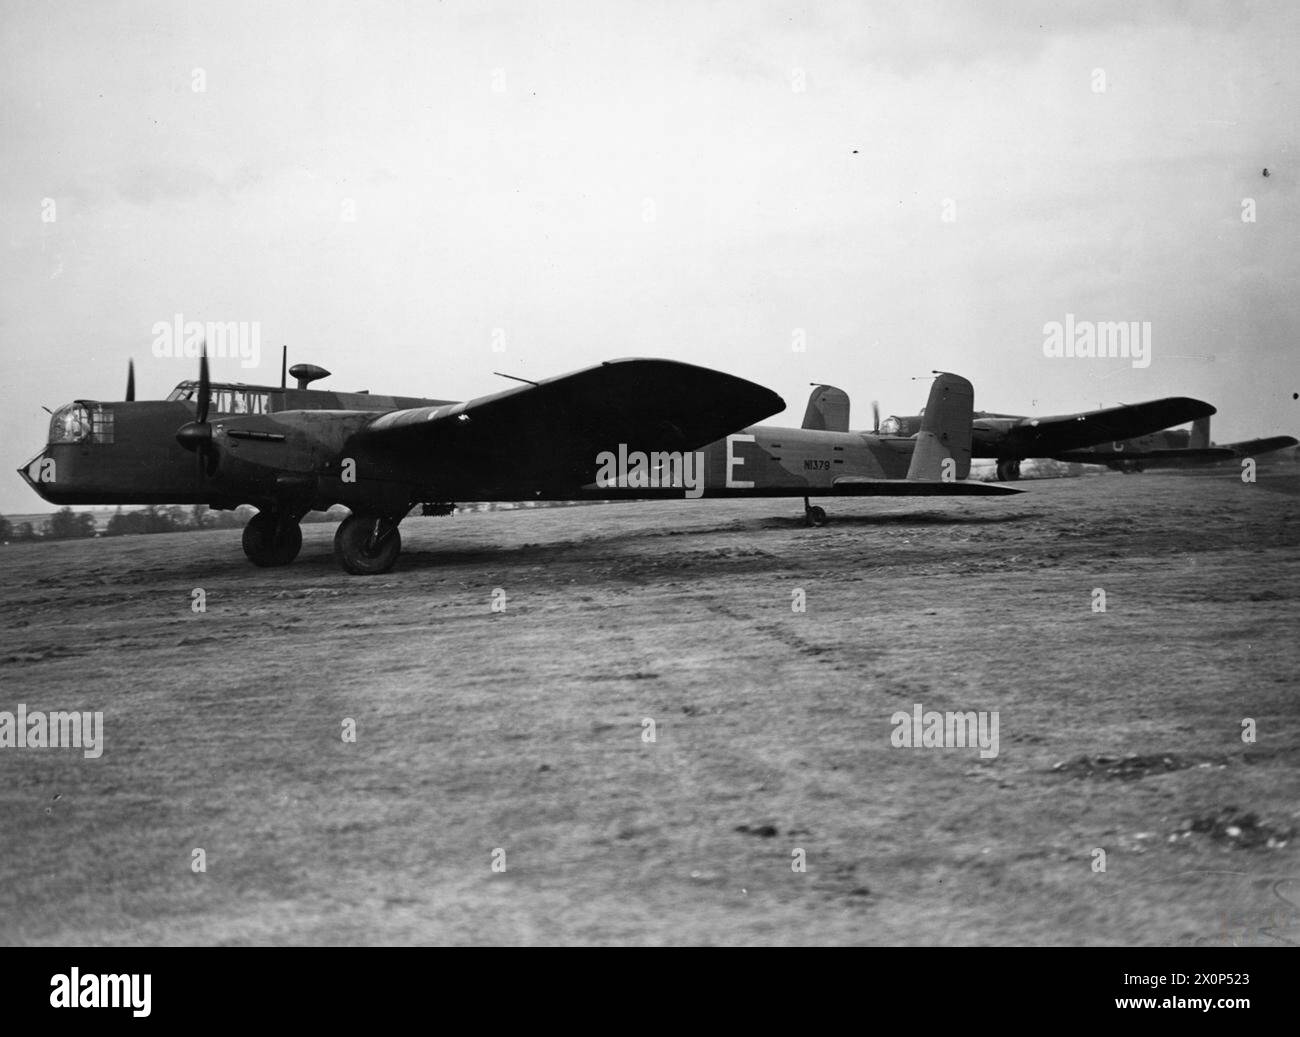 RAF BOMBER COMMAND 1940 - Armstrong Whitworth Whitley Mk vs of No. 102 Squadron lors d'une journée de presse à Driffield, mars 1940. L'avion de premier plan est N1379 DY-E. Banque D'Images